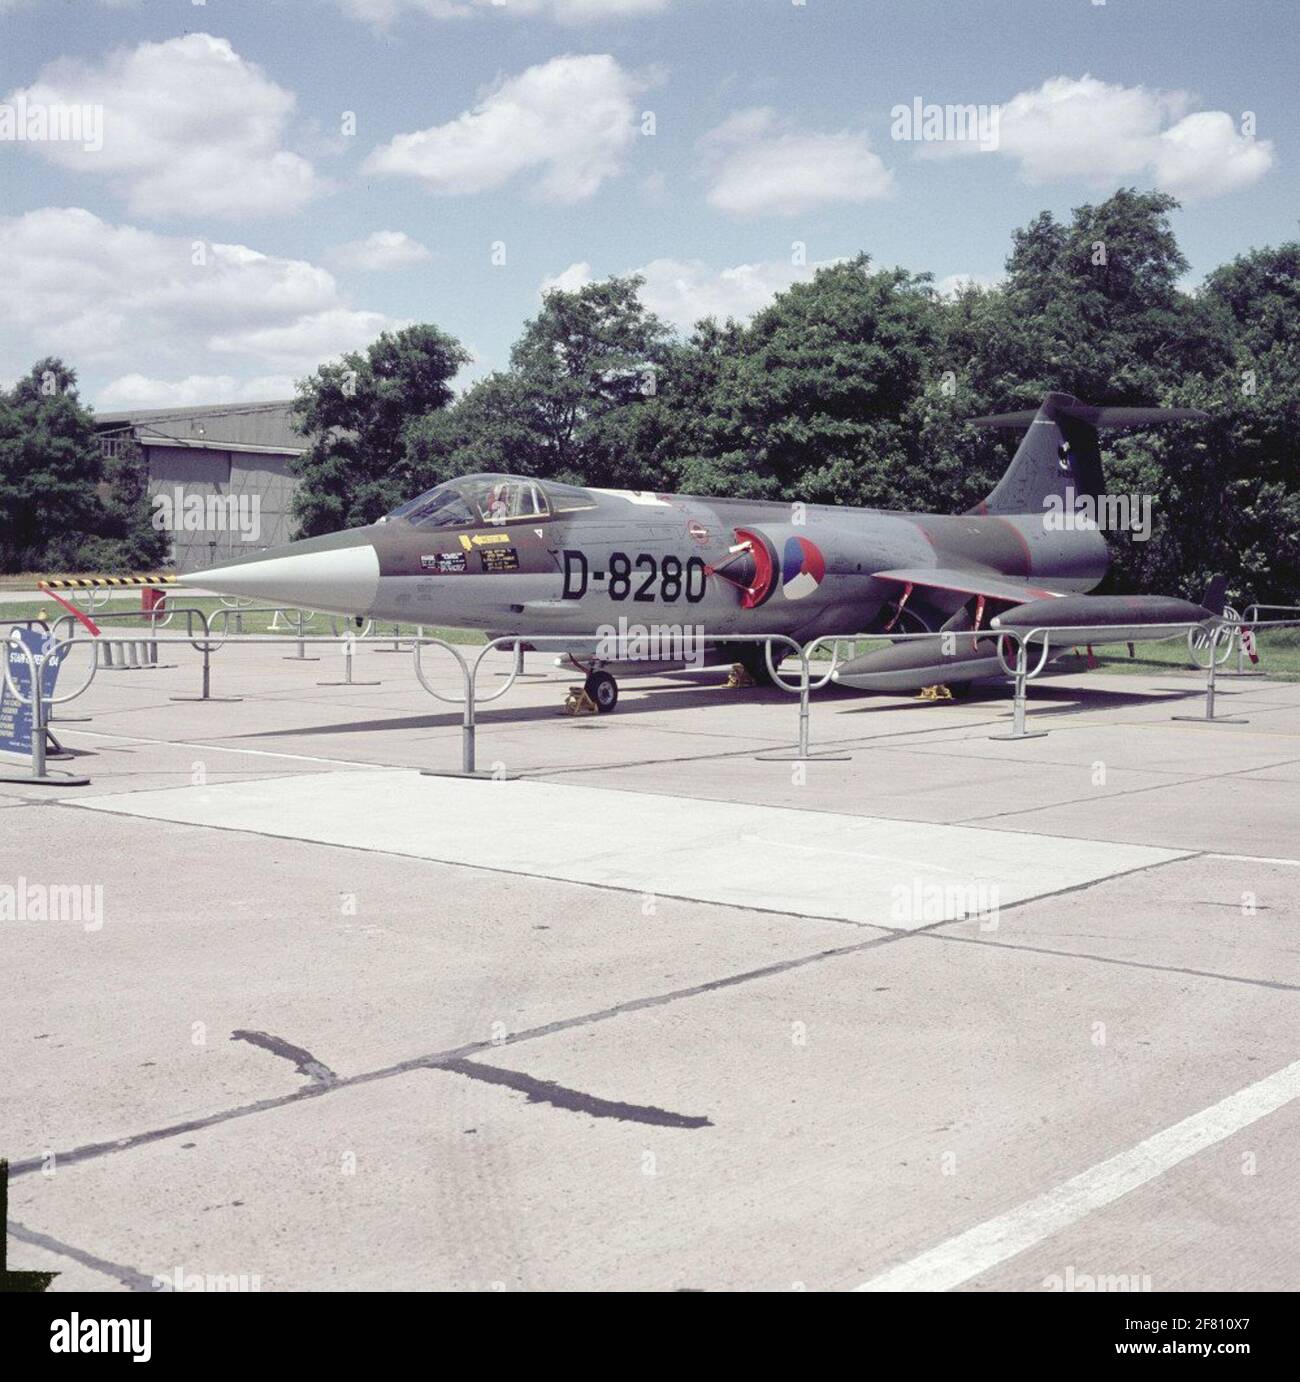 Lockheed F-104G Starfighter, D-8280 de l'escadron 311 pendant la semaine d'ouverture à la base aérienne de Soesterberg en 1968, probablement le 4 juillet. Banque D'Images